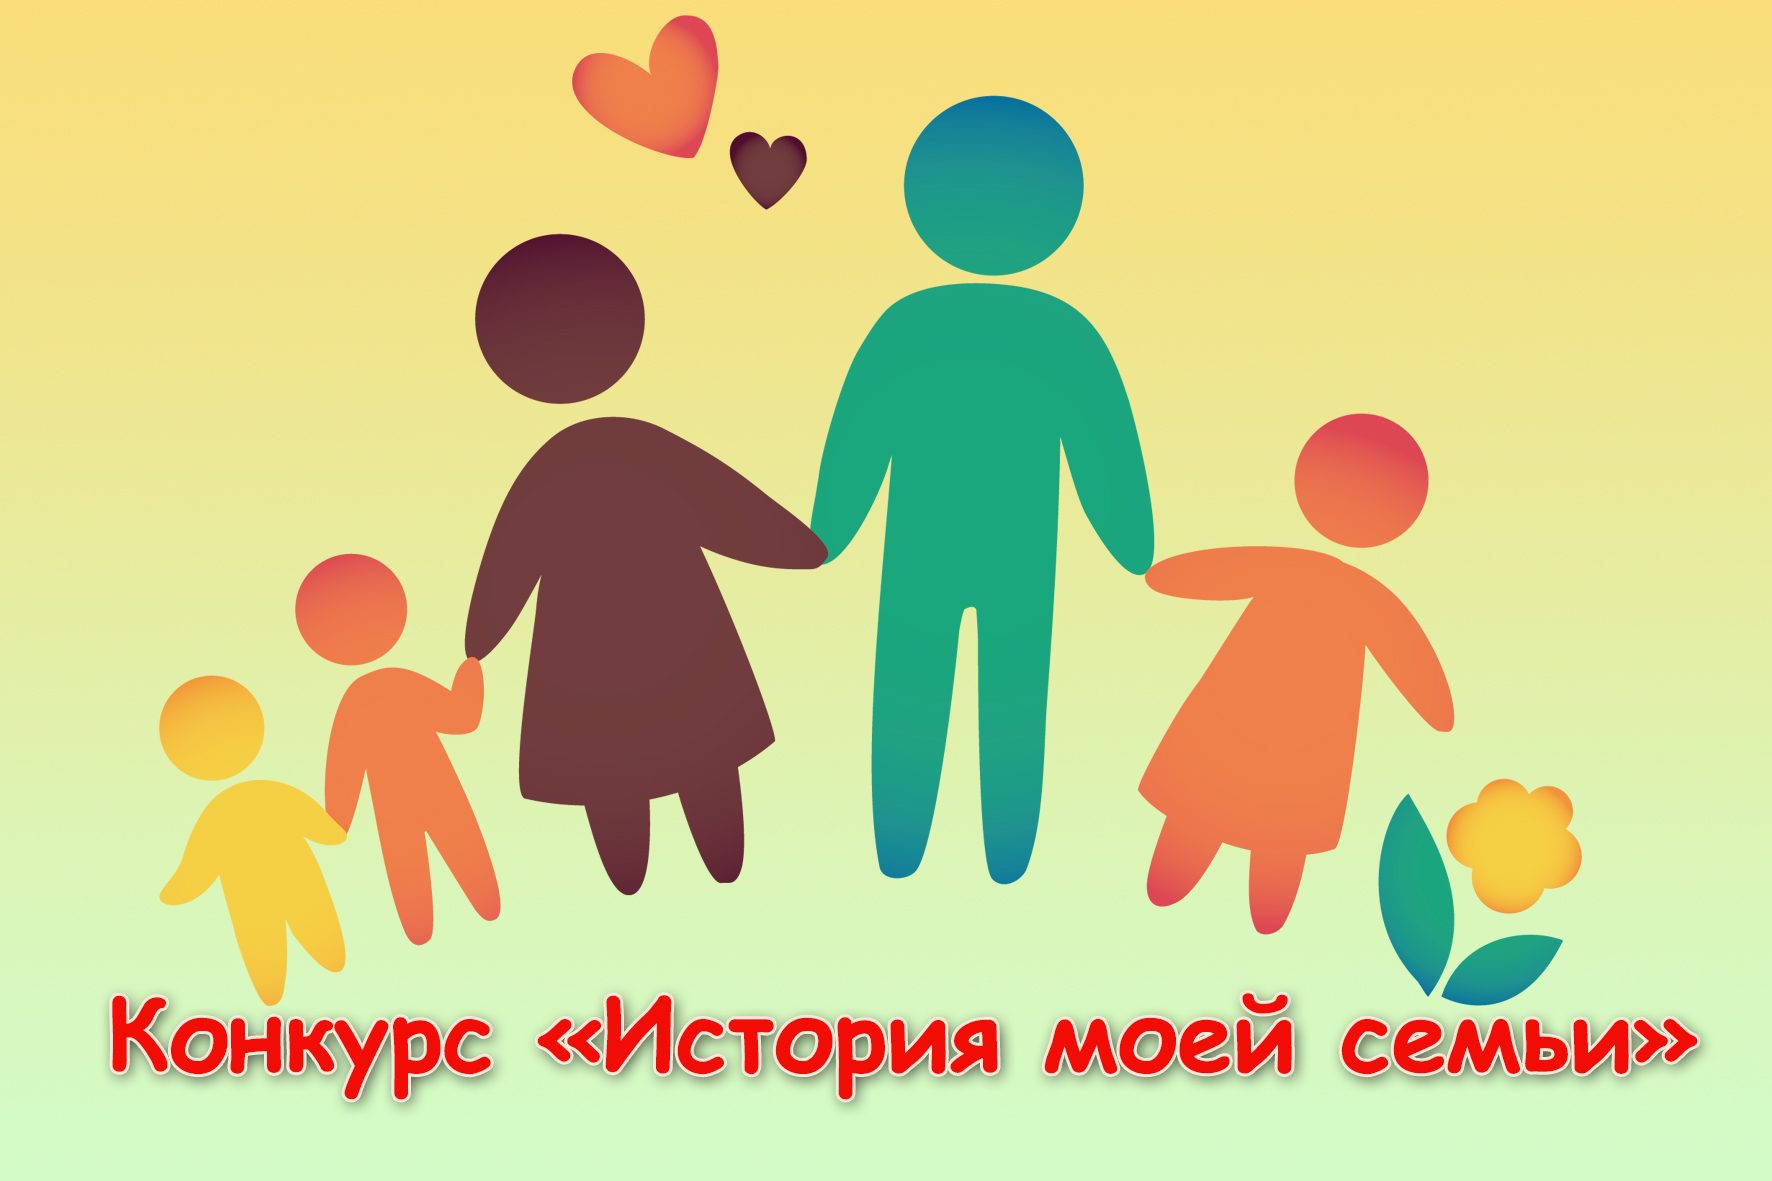 Краевое Отделение ПФР объявляет творческий конкурс «История моей семьи» среди жителей Ставрополья